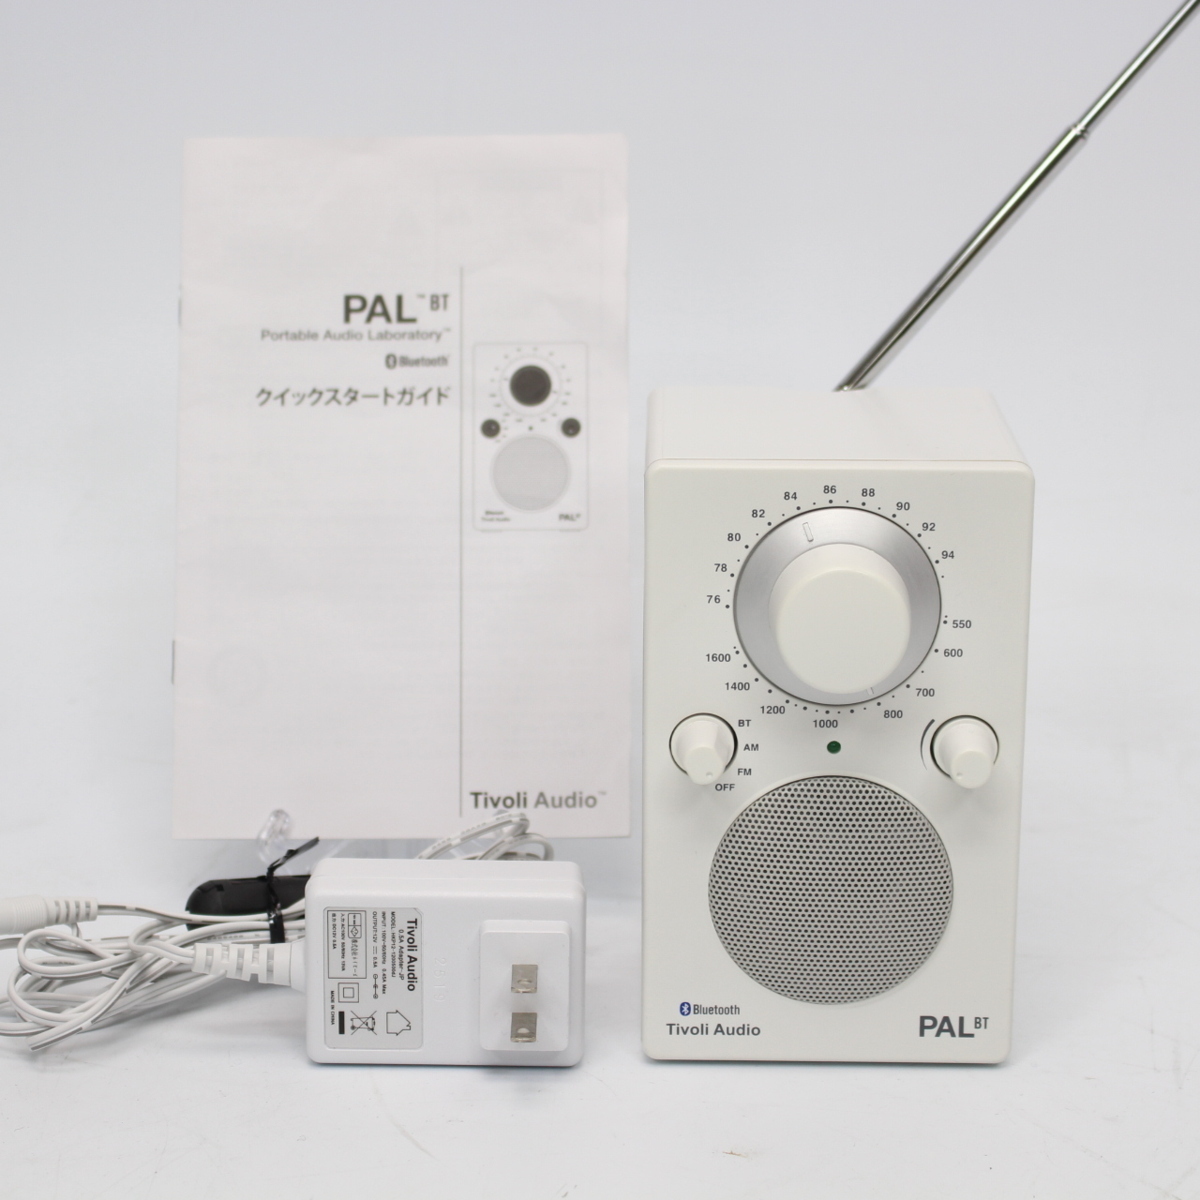 川崎市宮前区にて チボリオーディオ ワイヤレス AM/FMラジオスピーカー PAL BT  を出張買取させて頂きました。